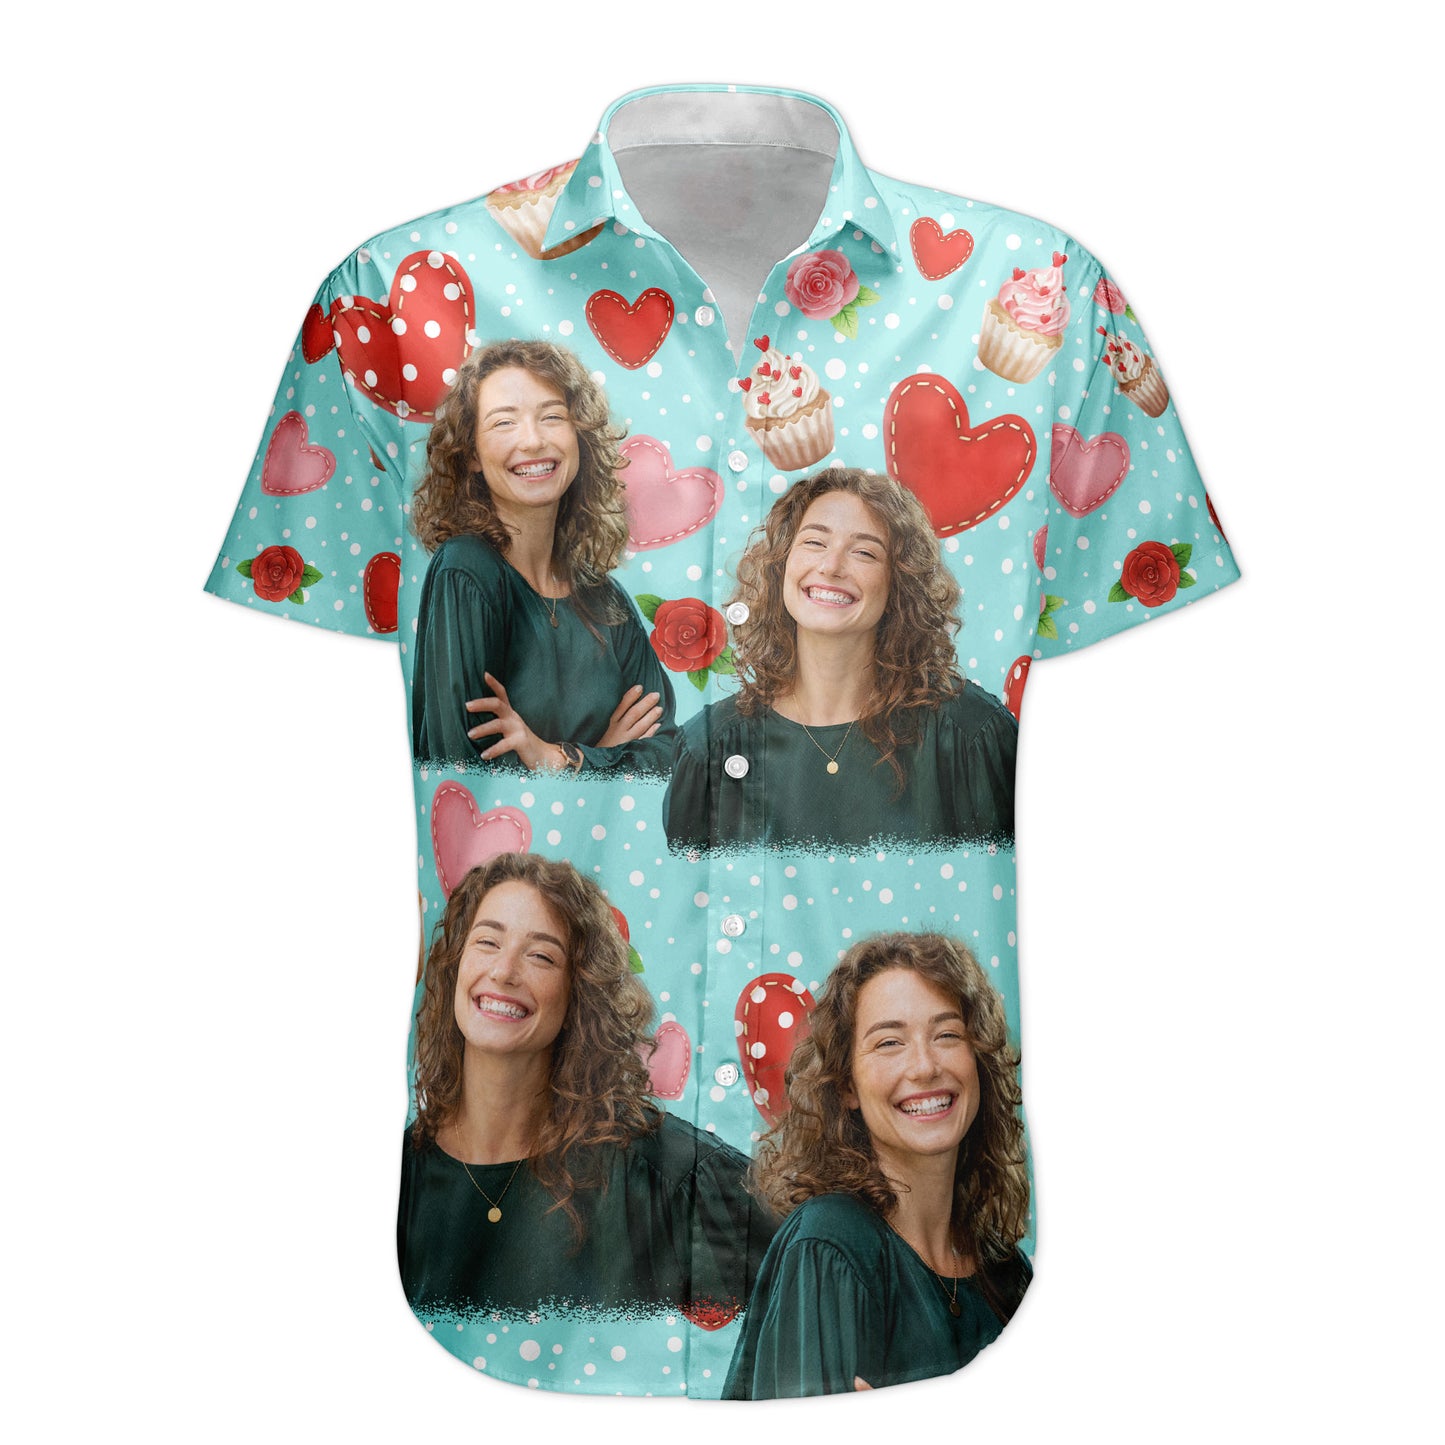 All You Need Is Love With Cupcake And Flowers - Custom Photo Hawaiian Shirts